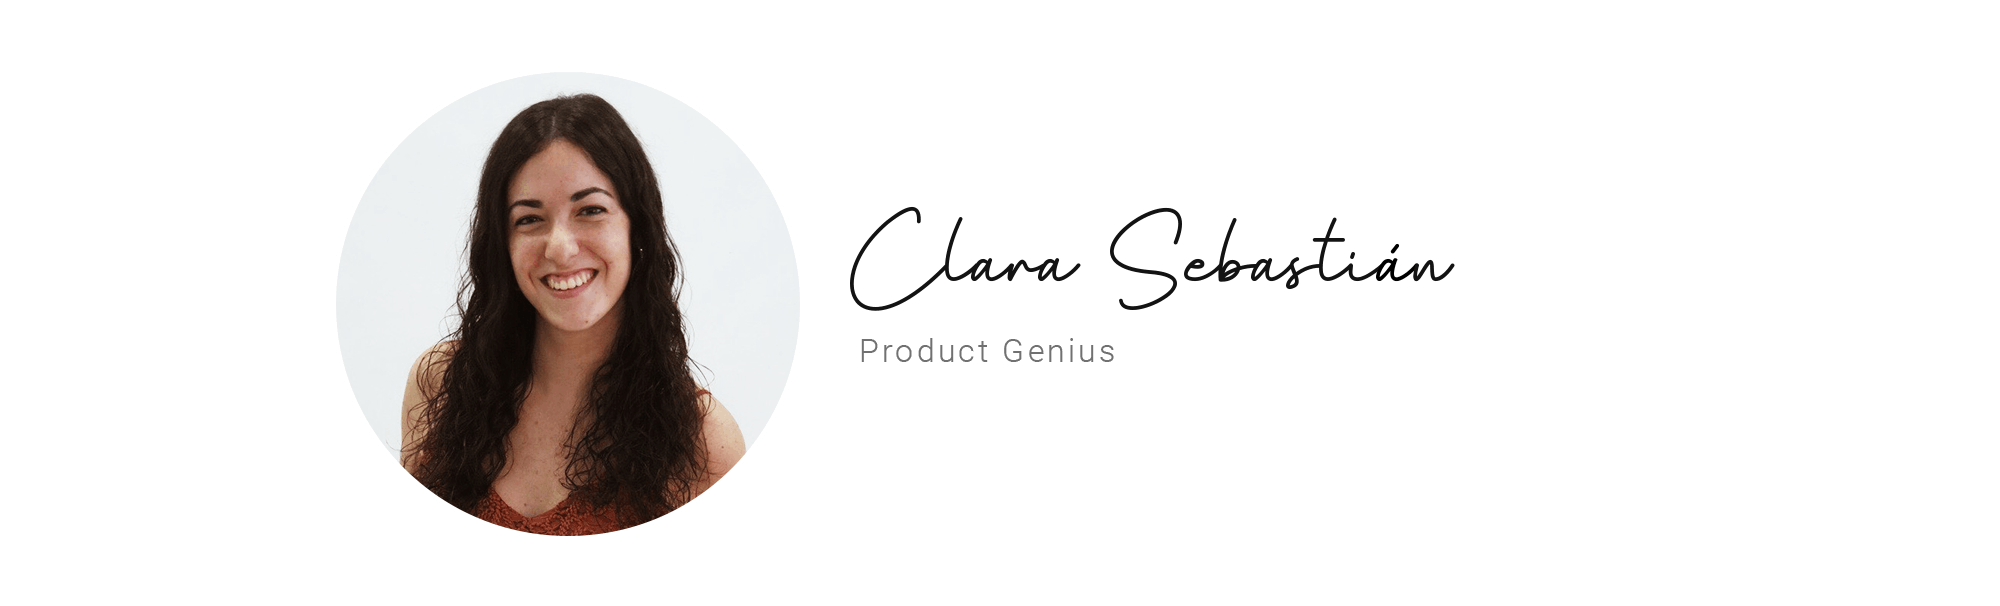 Clara Sebastian Product Genius